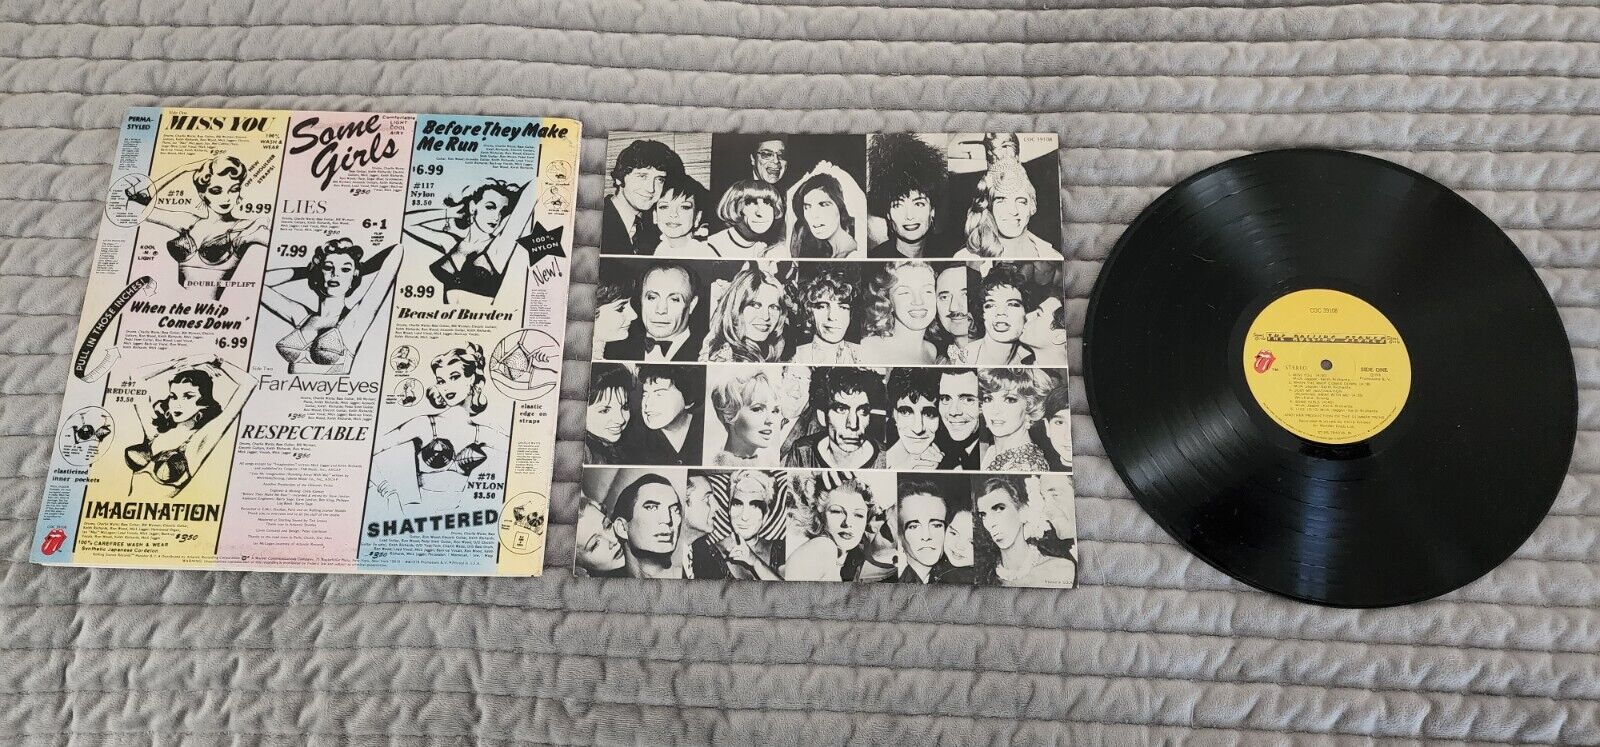 SUPER RARE ERROR 1978 Rolling Stones Some Girls LP Vinyl Record COC 39108